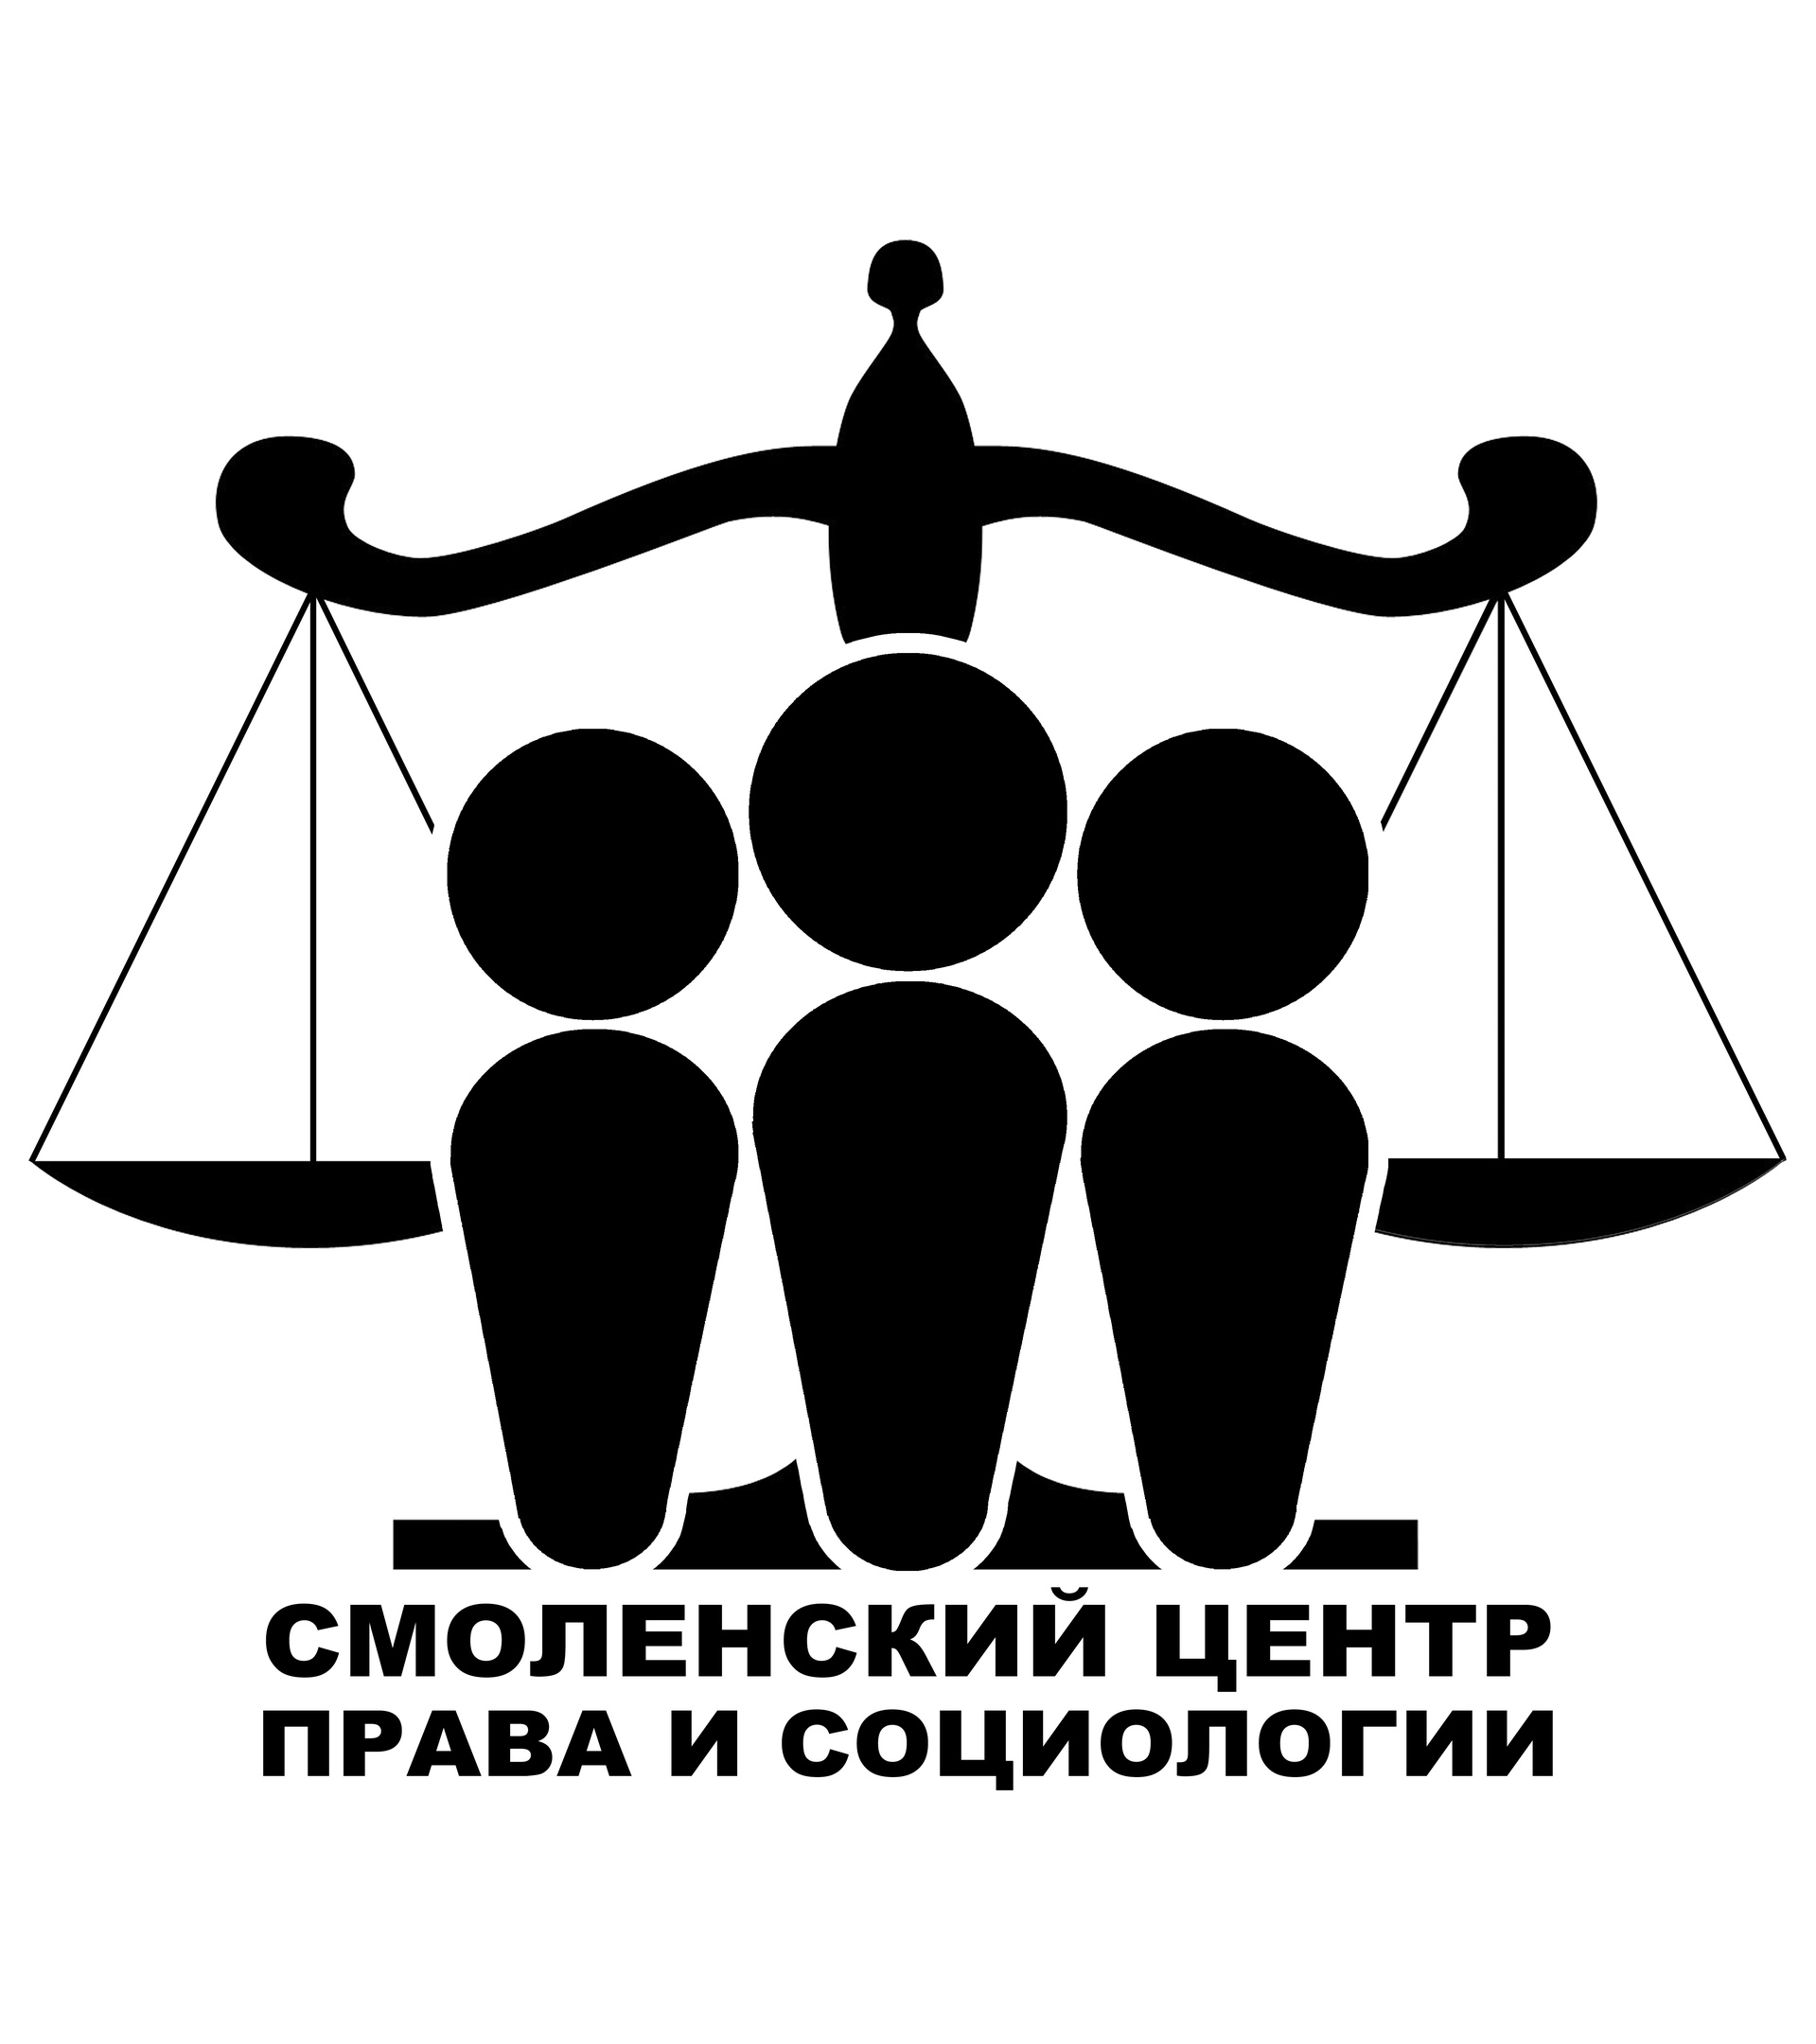 Смоленская региональная общественная организация общество защиты прав потребителей «СМОЛЕНСКИЙ ЦЕНТР ПРАВА И СОЦИОЛОГИИ»